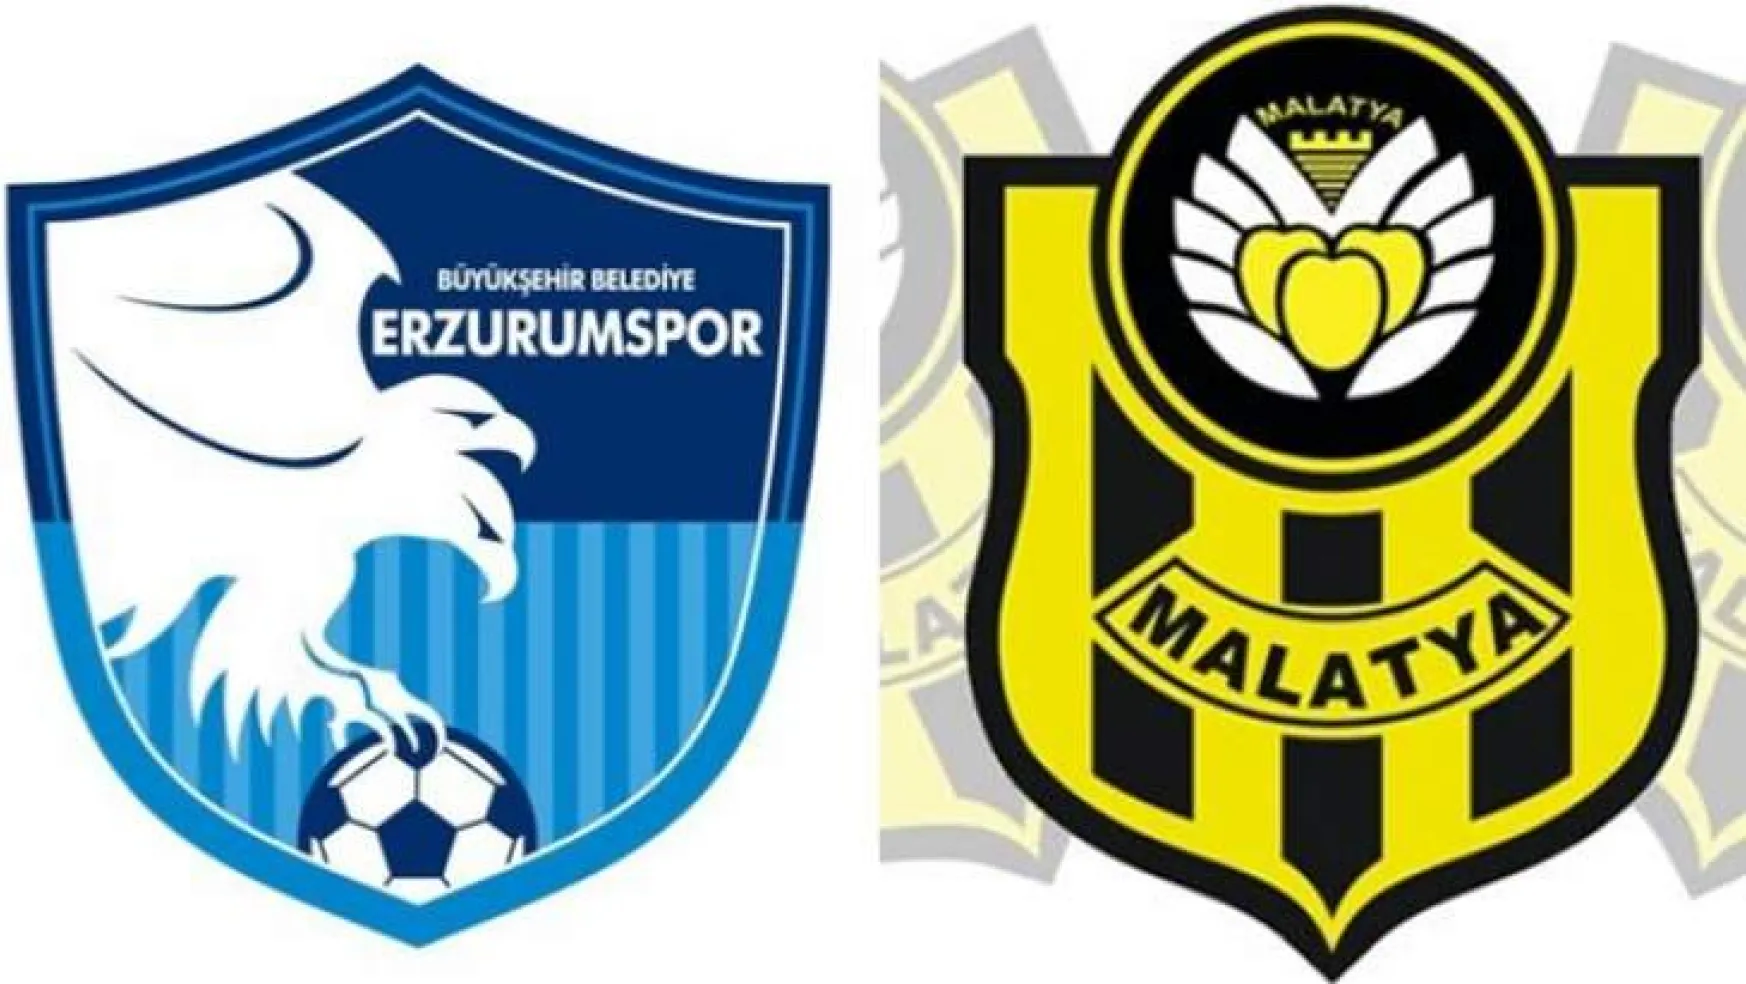 BB Erzurumspor - Evkur Yeni Malatyaspor: 1-3